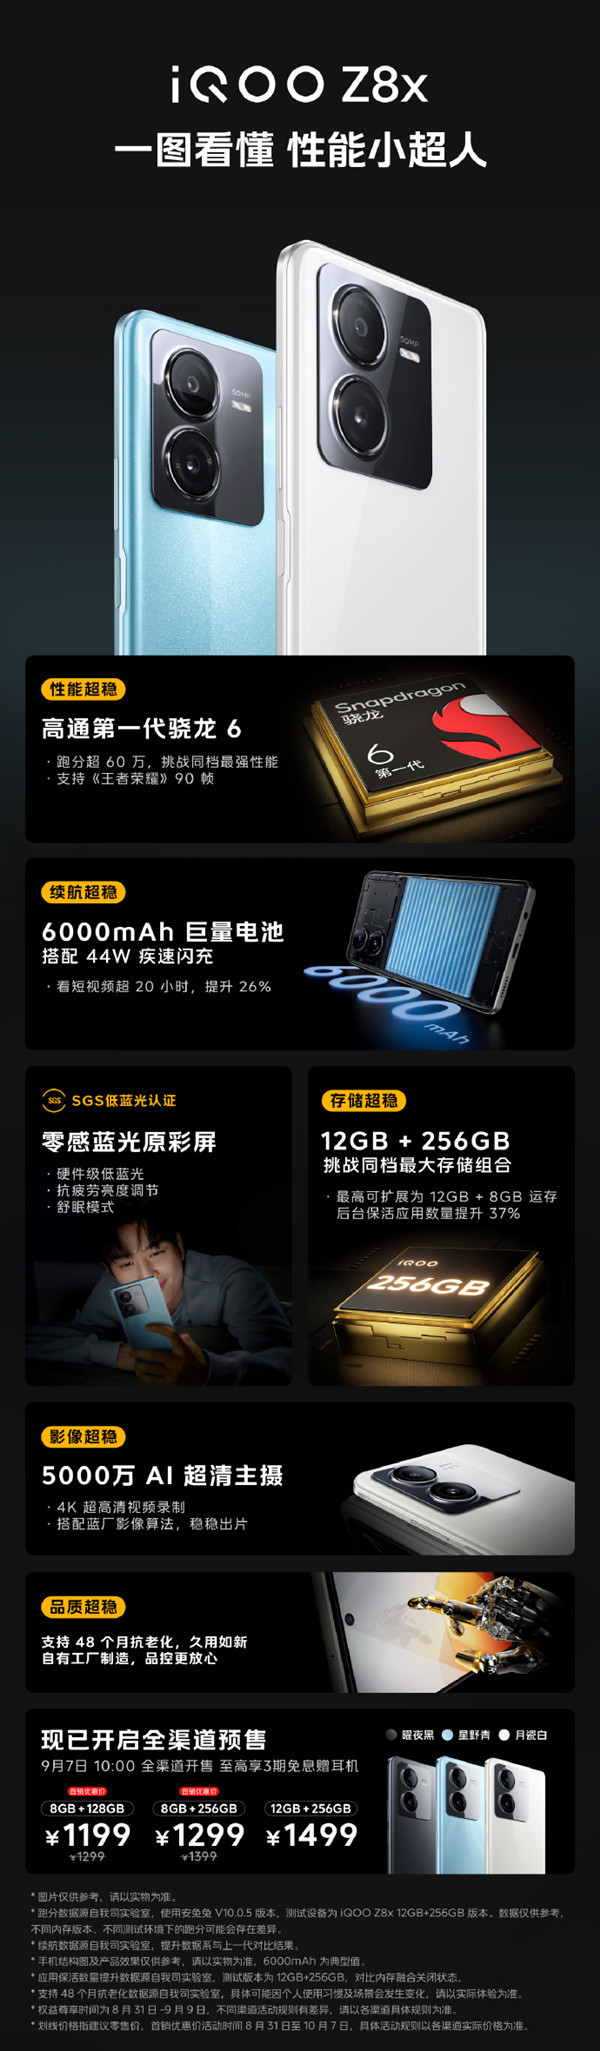 iQOO Z8系列将于9月7日开售 加量不加价1199元起